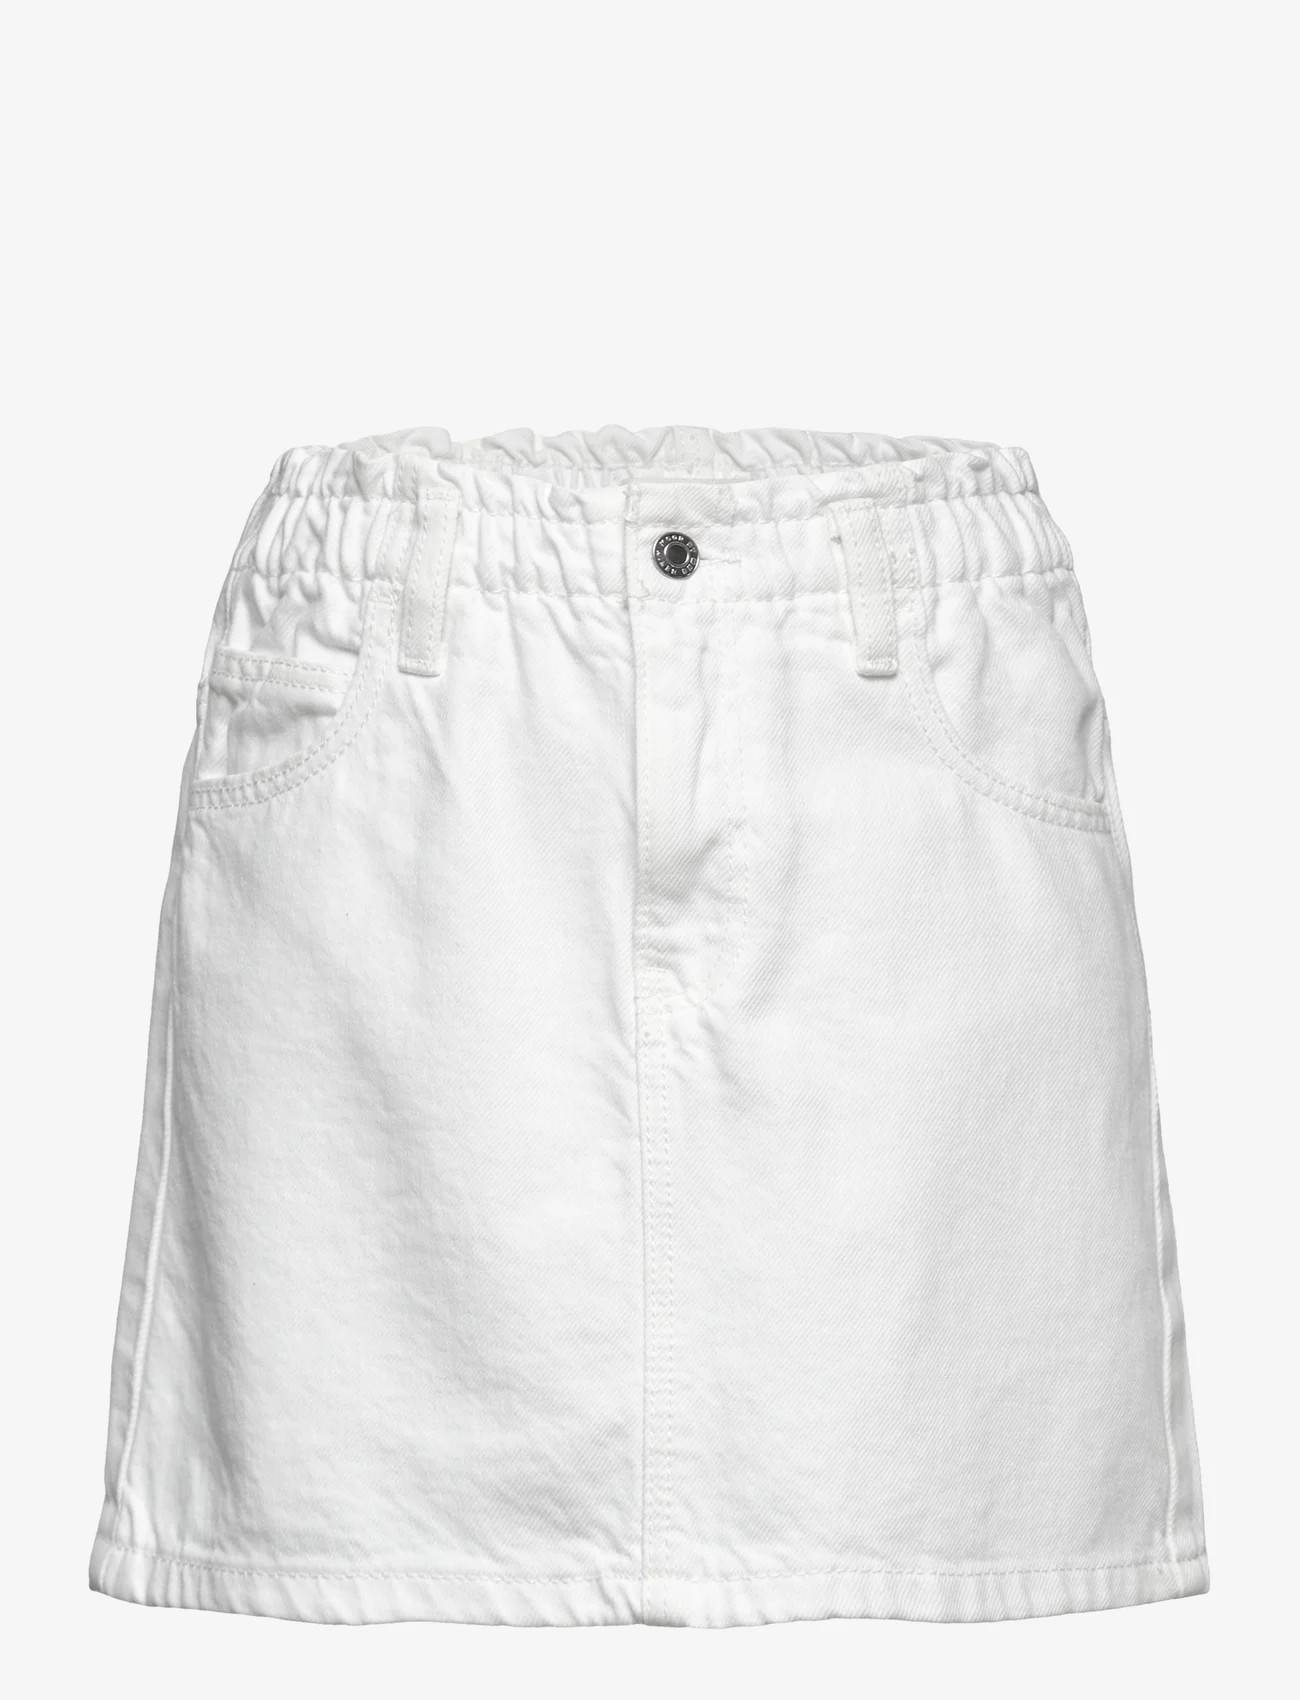 Mango - Paperbag denim skirt - jeanskjolar - white - 0